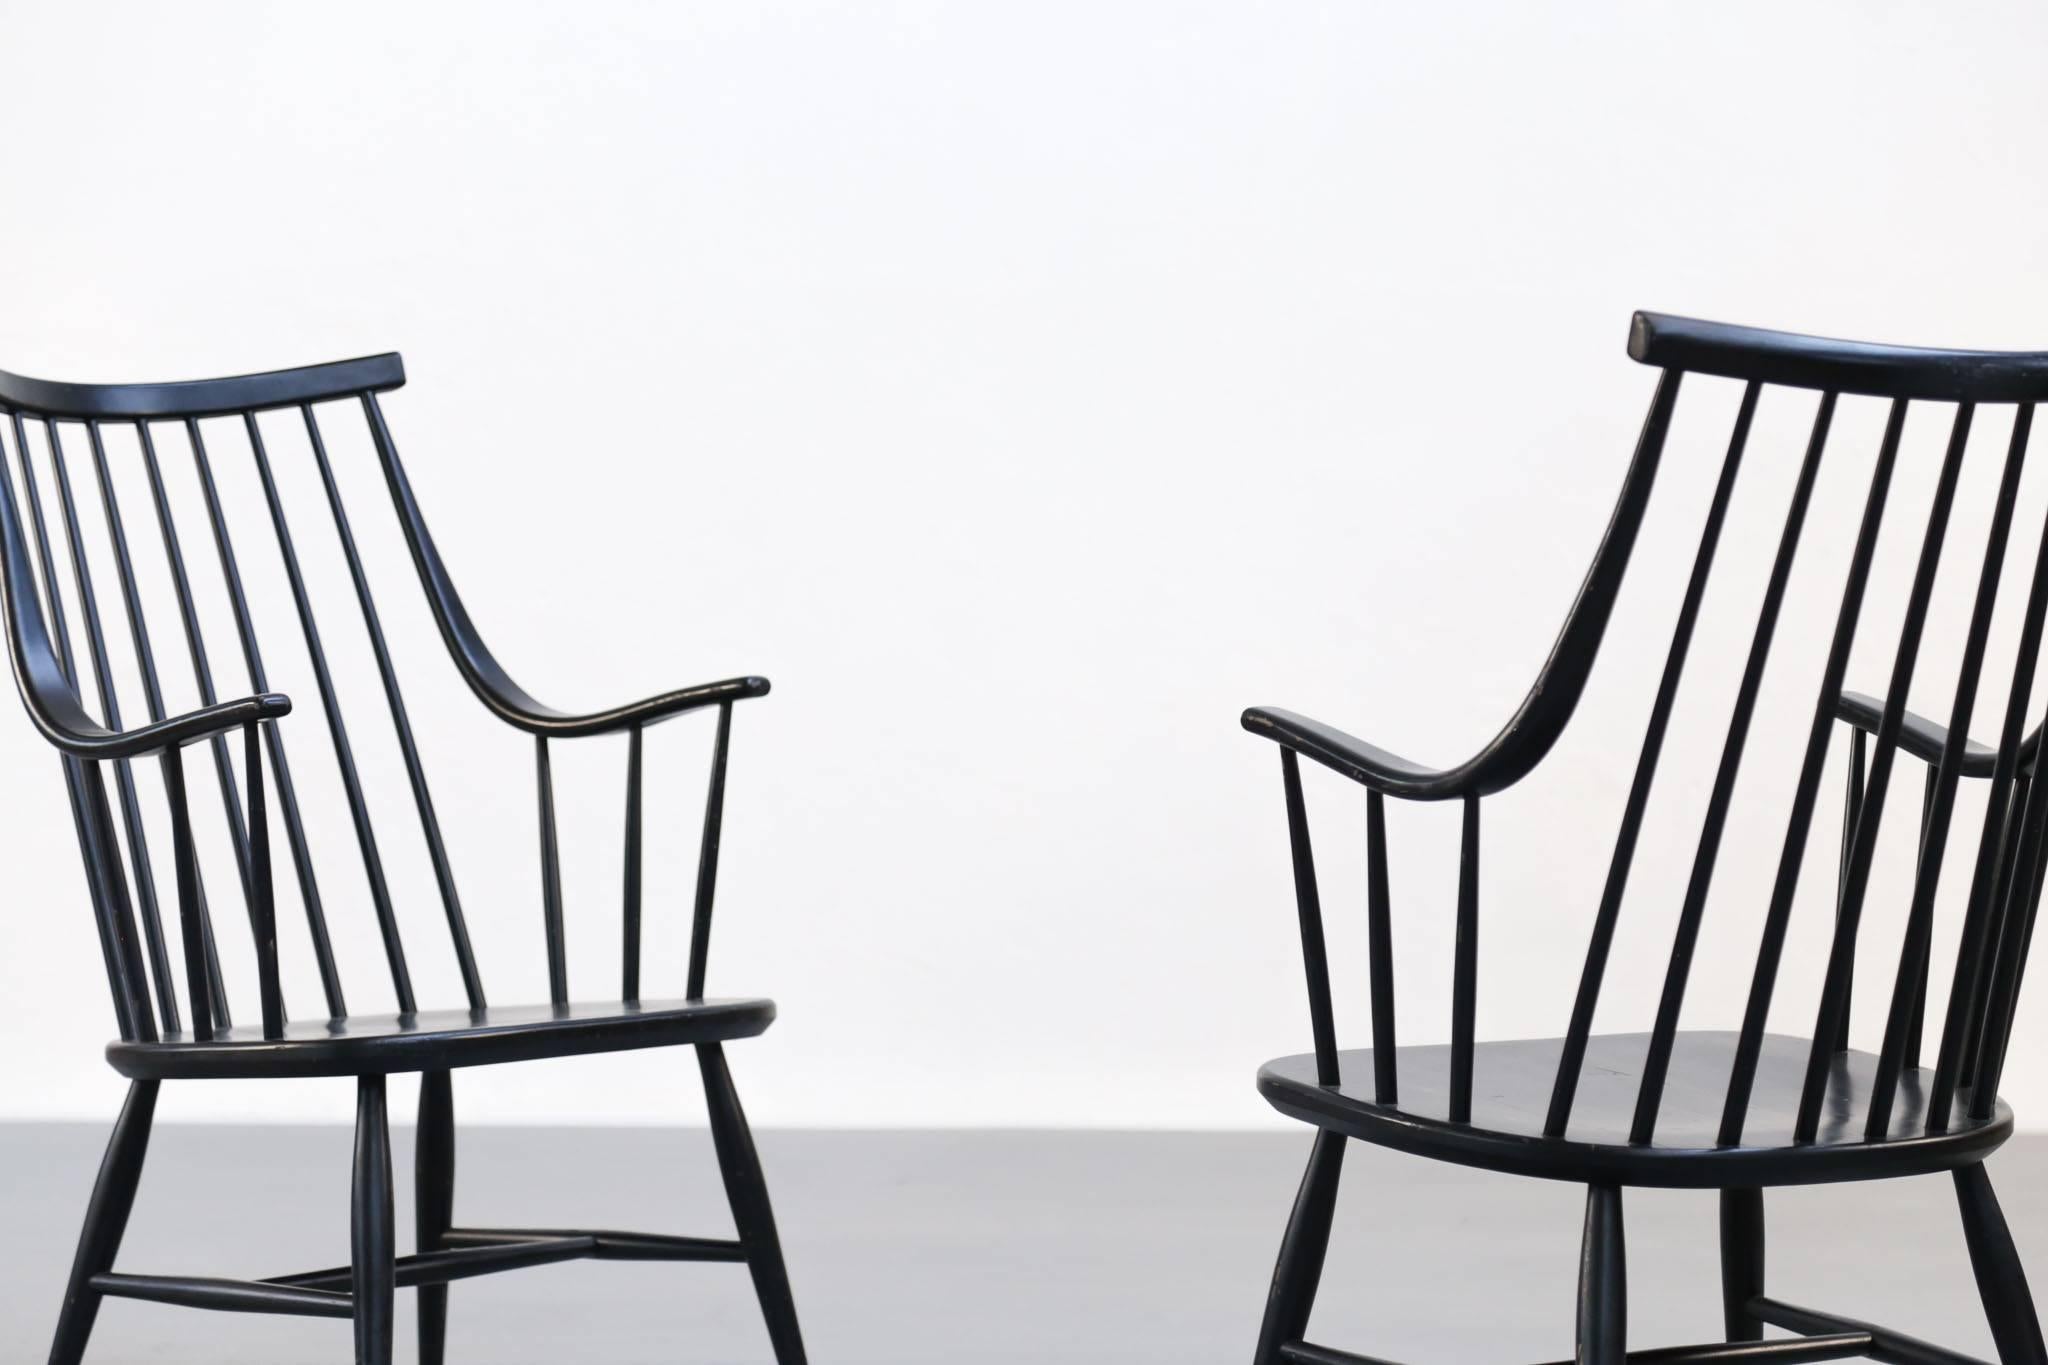 Ensemble de deux chaises conçues par Lena Larsson, suédoise.
Fabriqué en bois, laqué en noir.